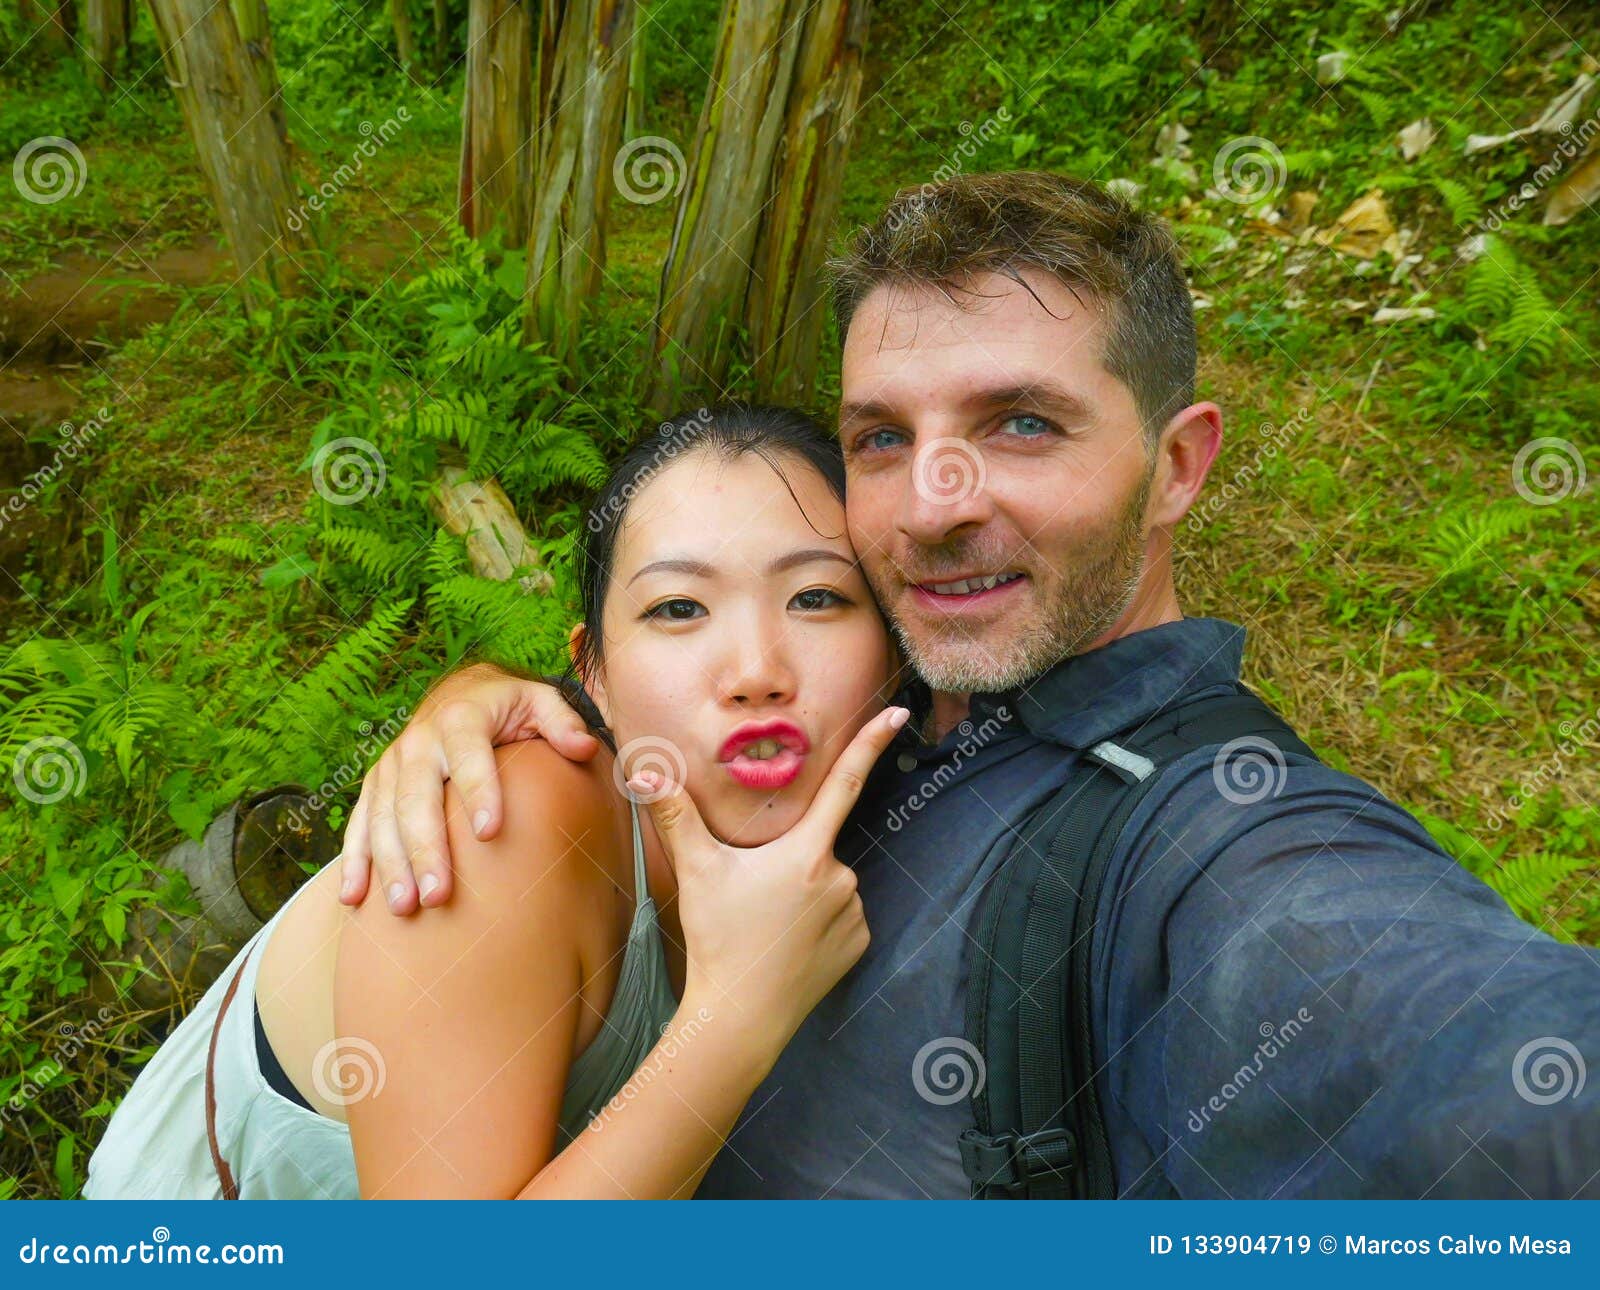 Asian - White interracial couple 1